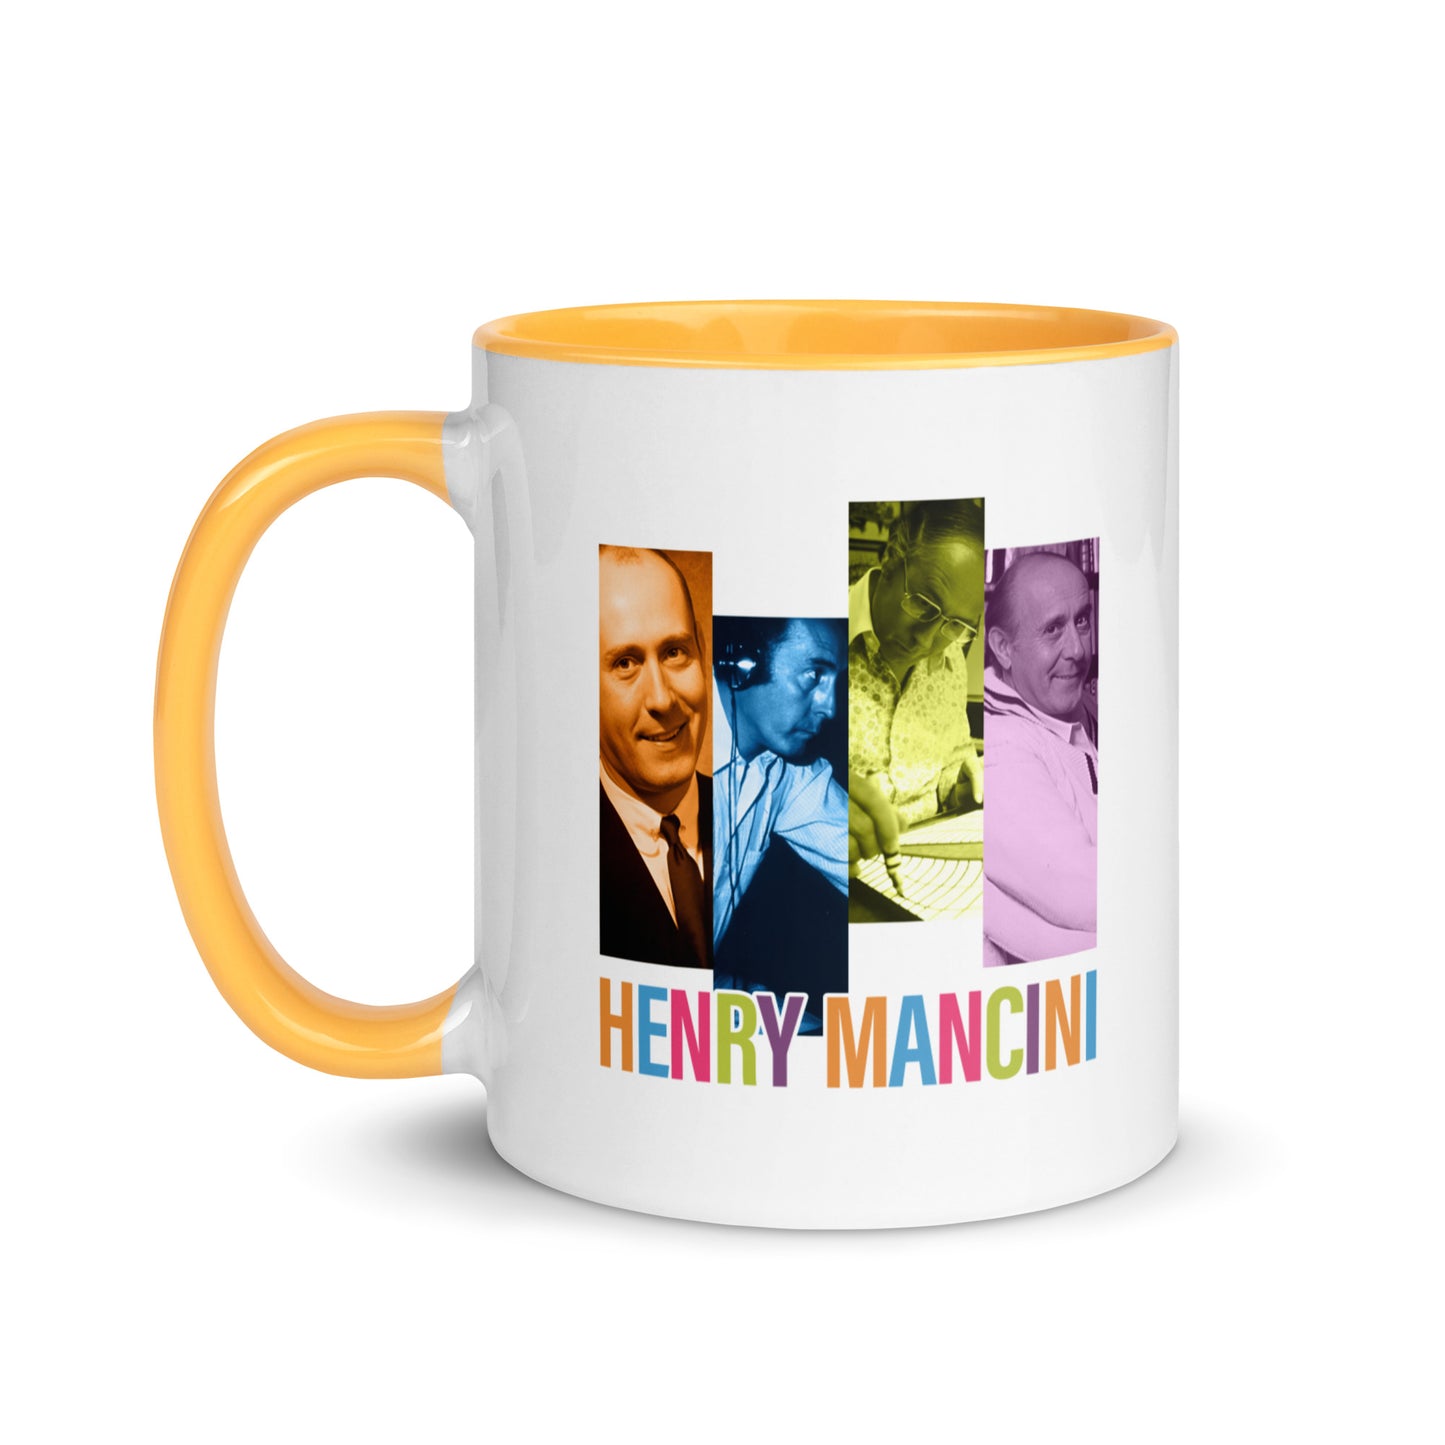 Henry Mancini Photo Mug